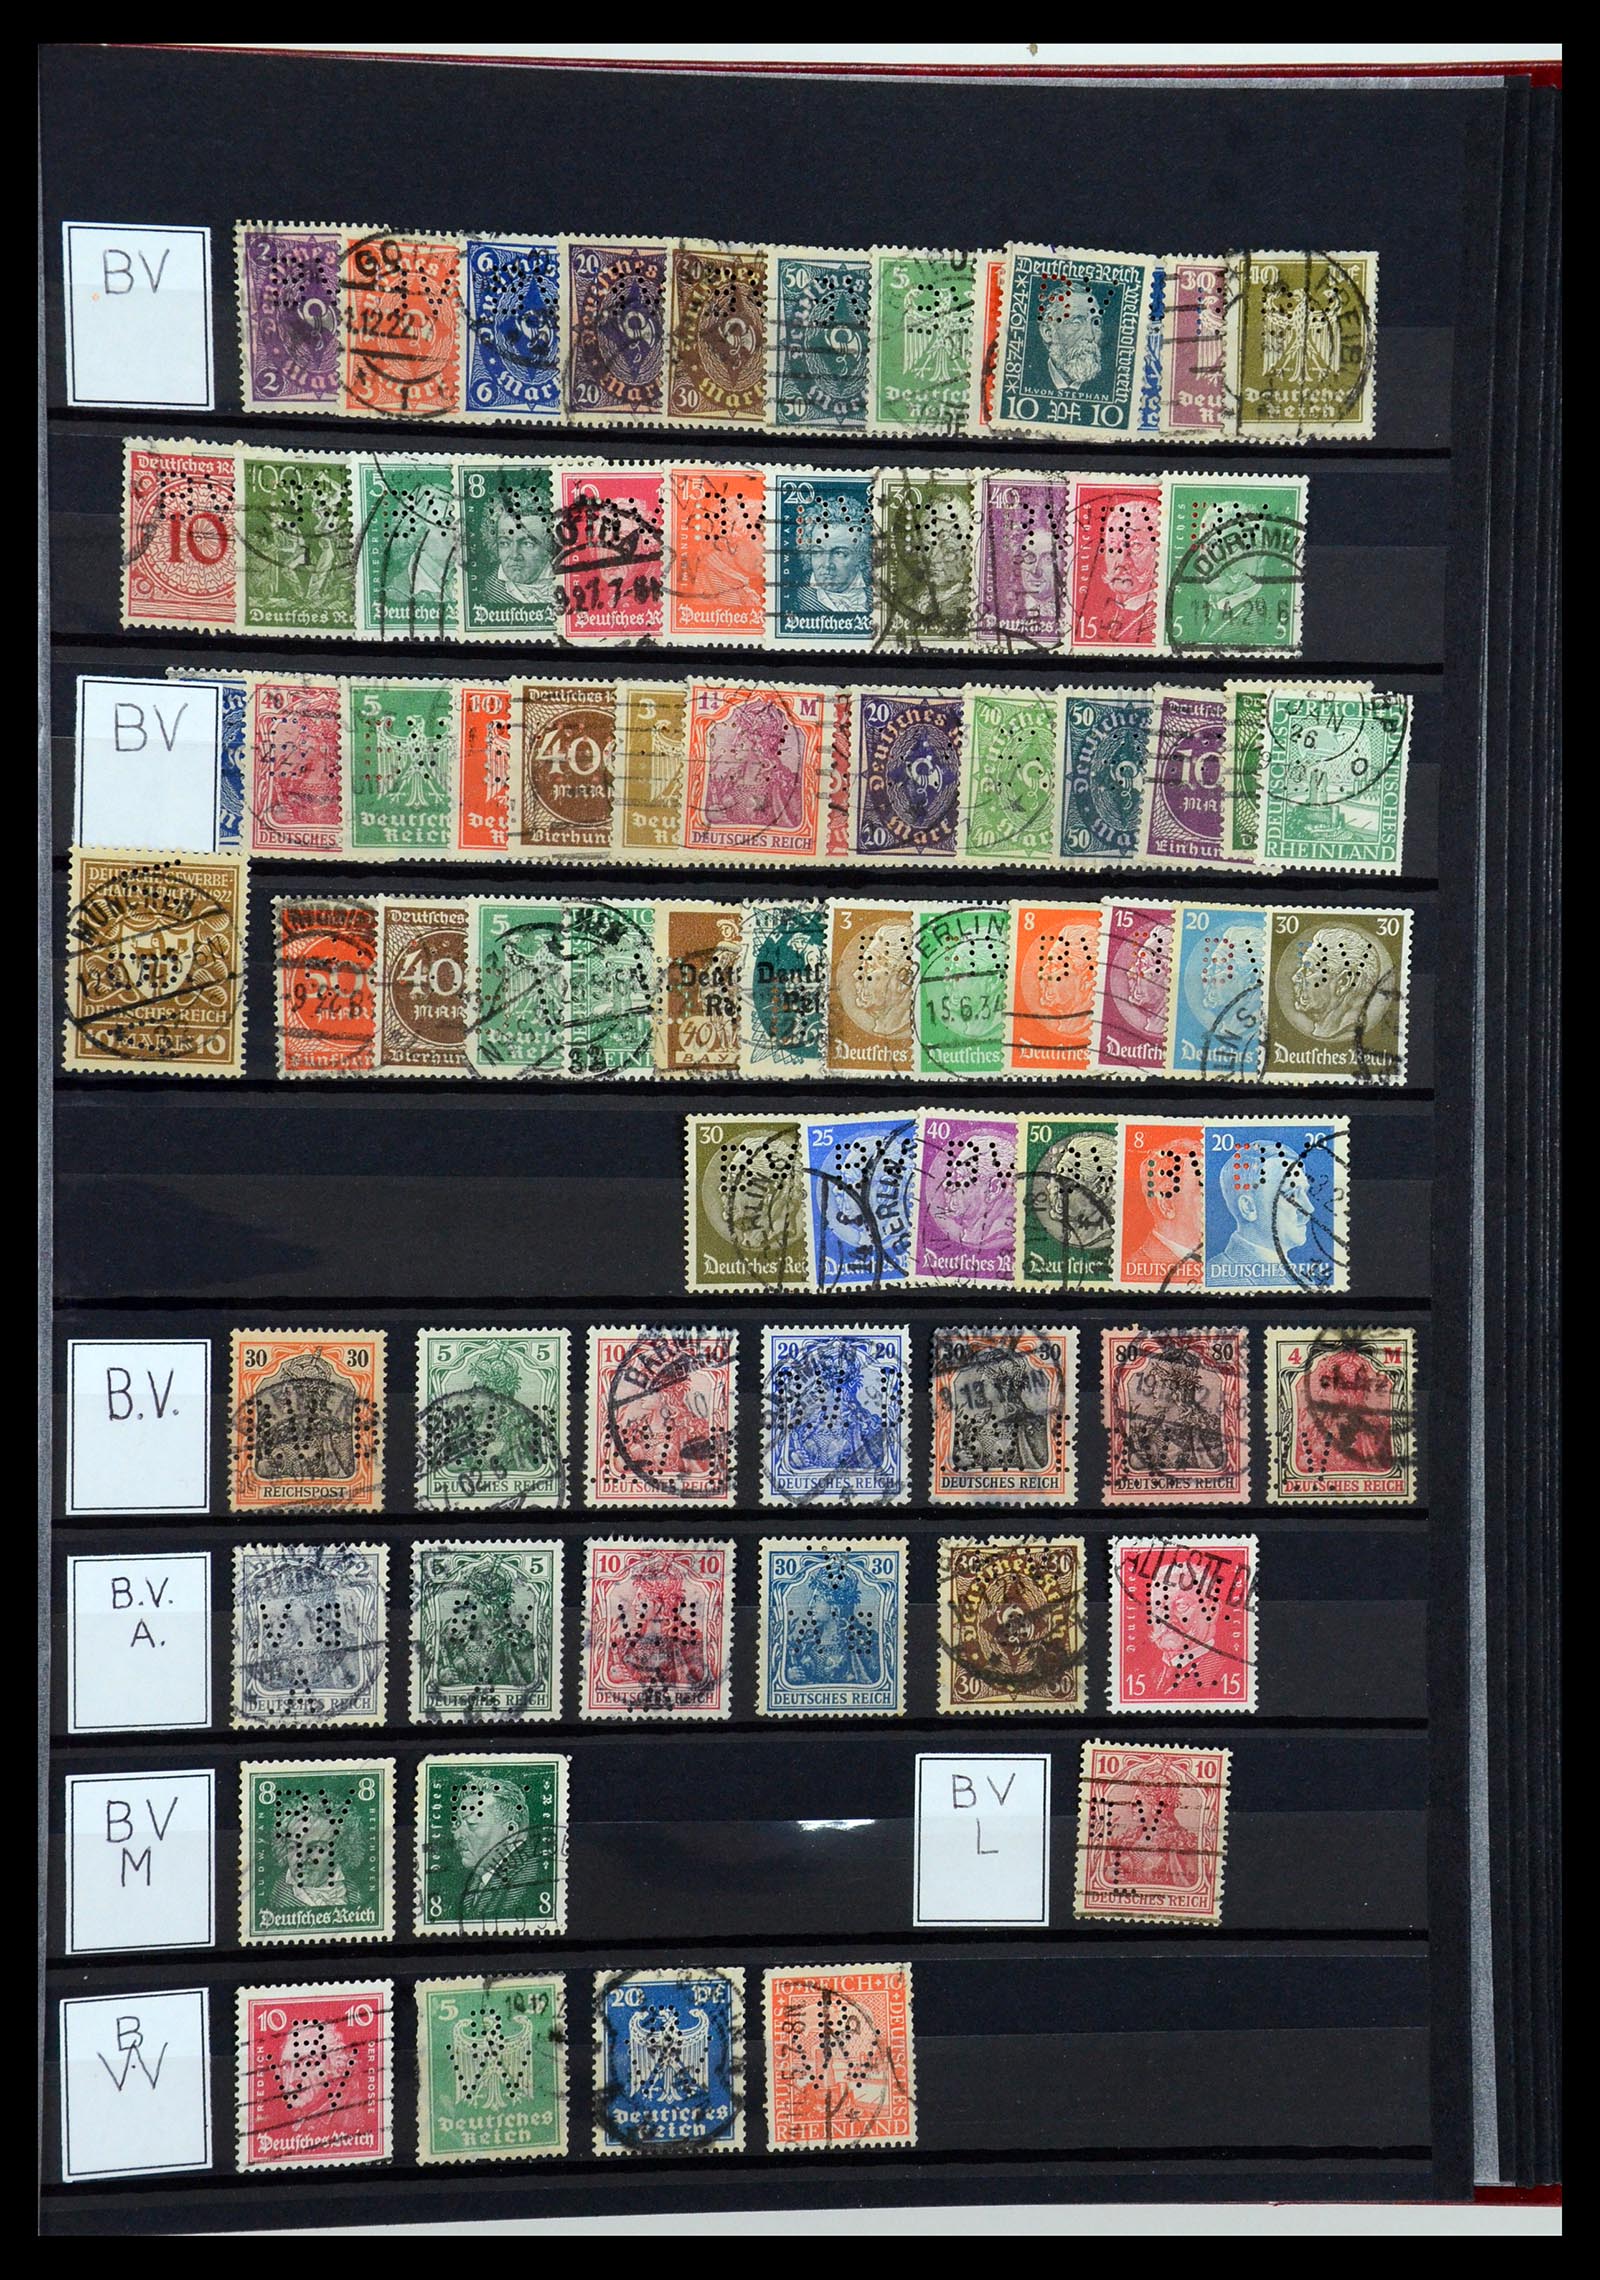 36405 049 - Stamp collection 36405 German Reich perfins 1880-1945.